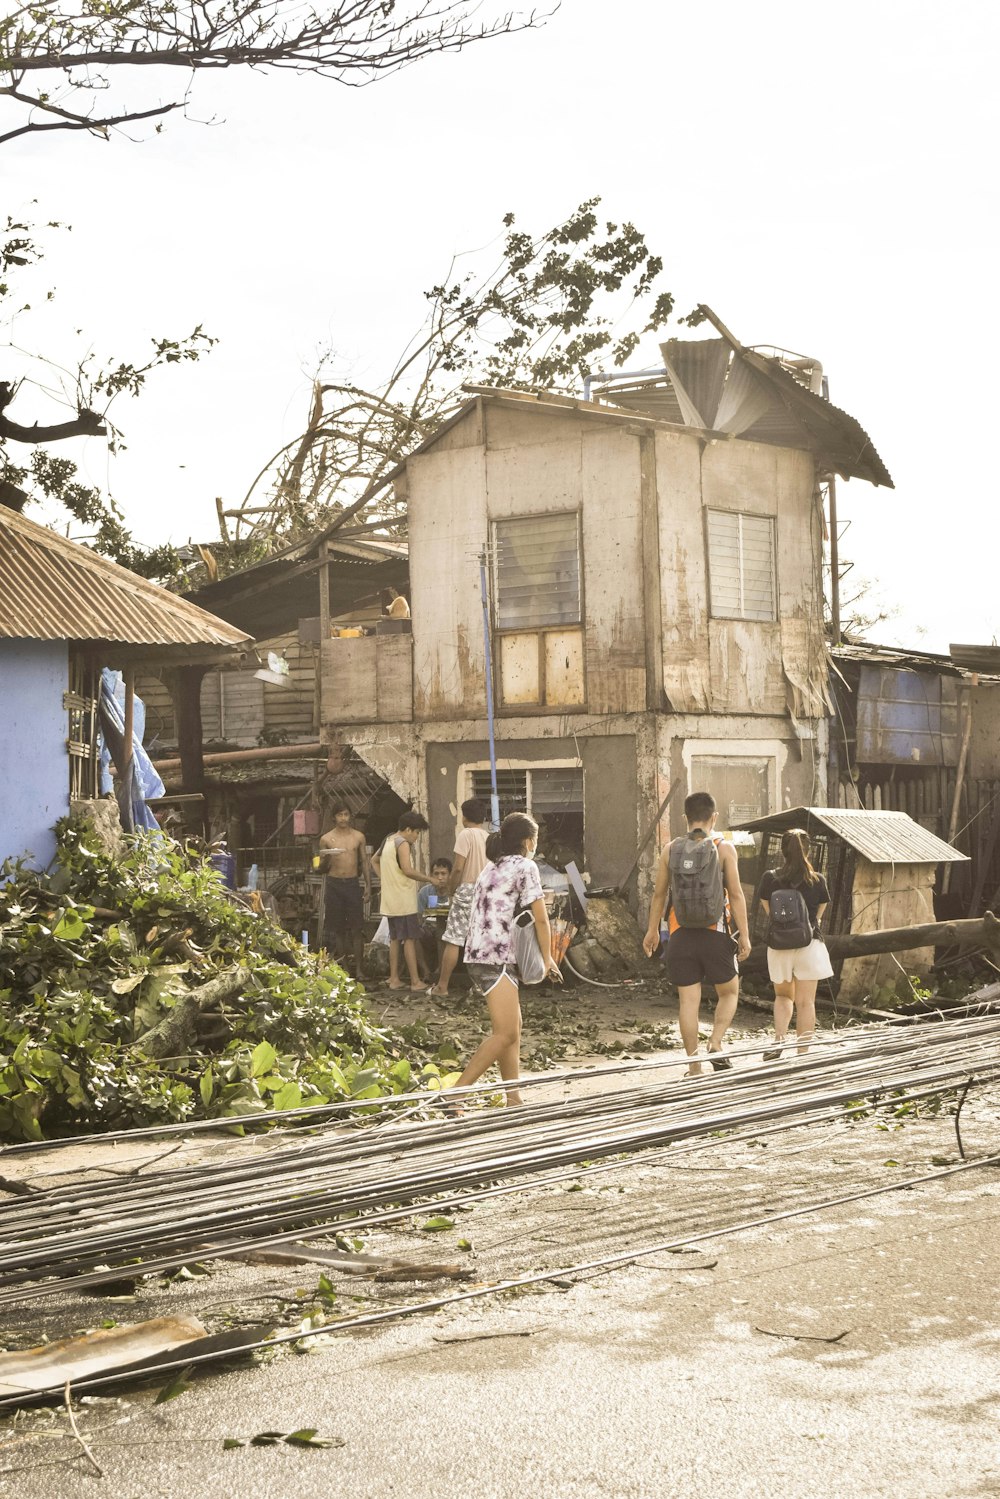 Un grupo de personas caminando frente a una casa deteriorada